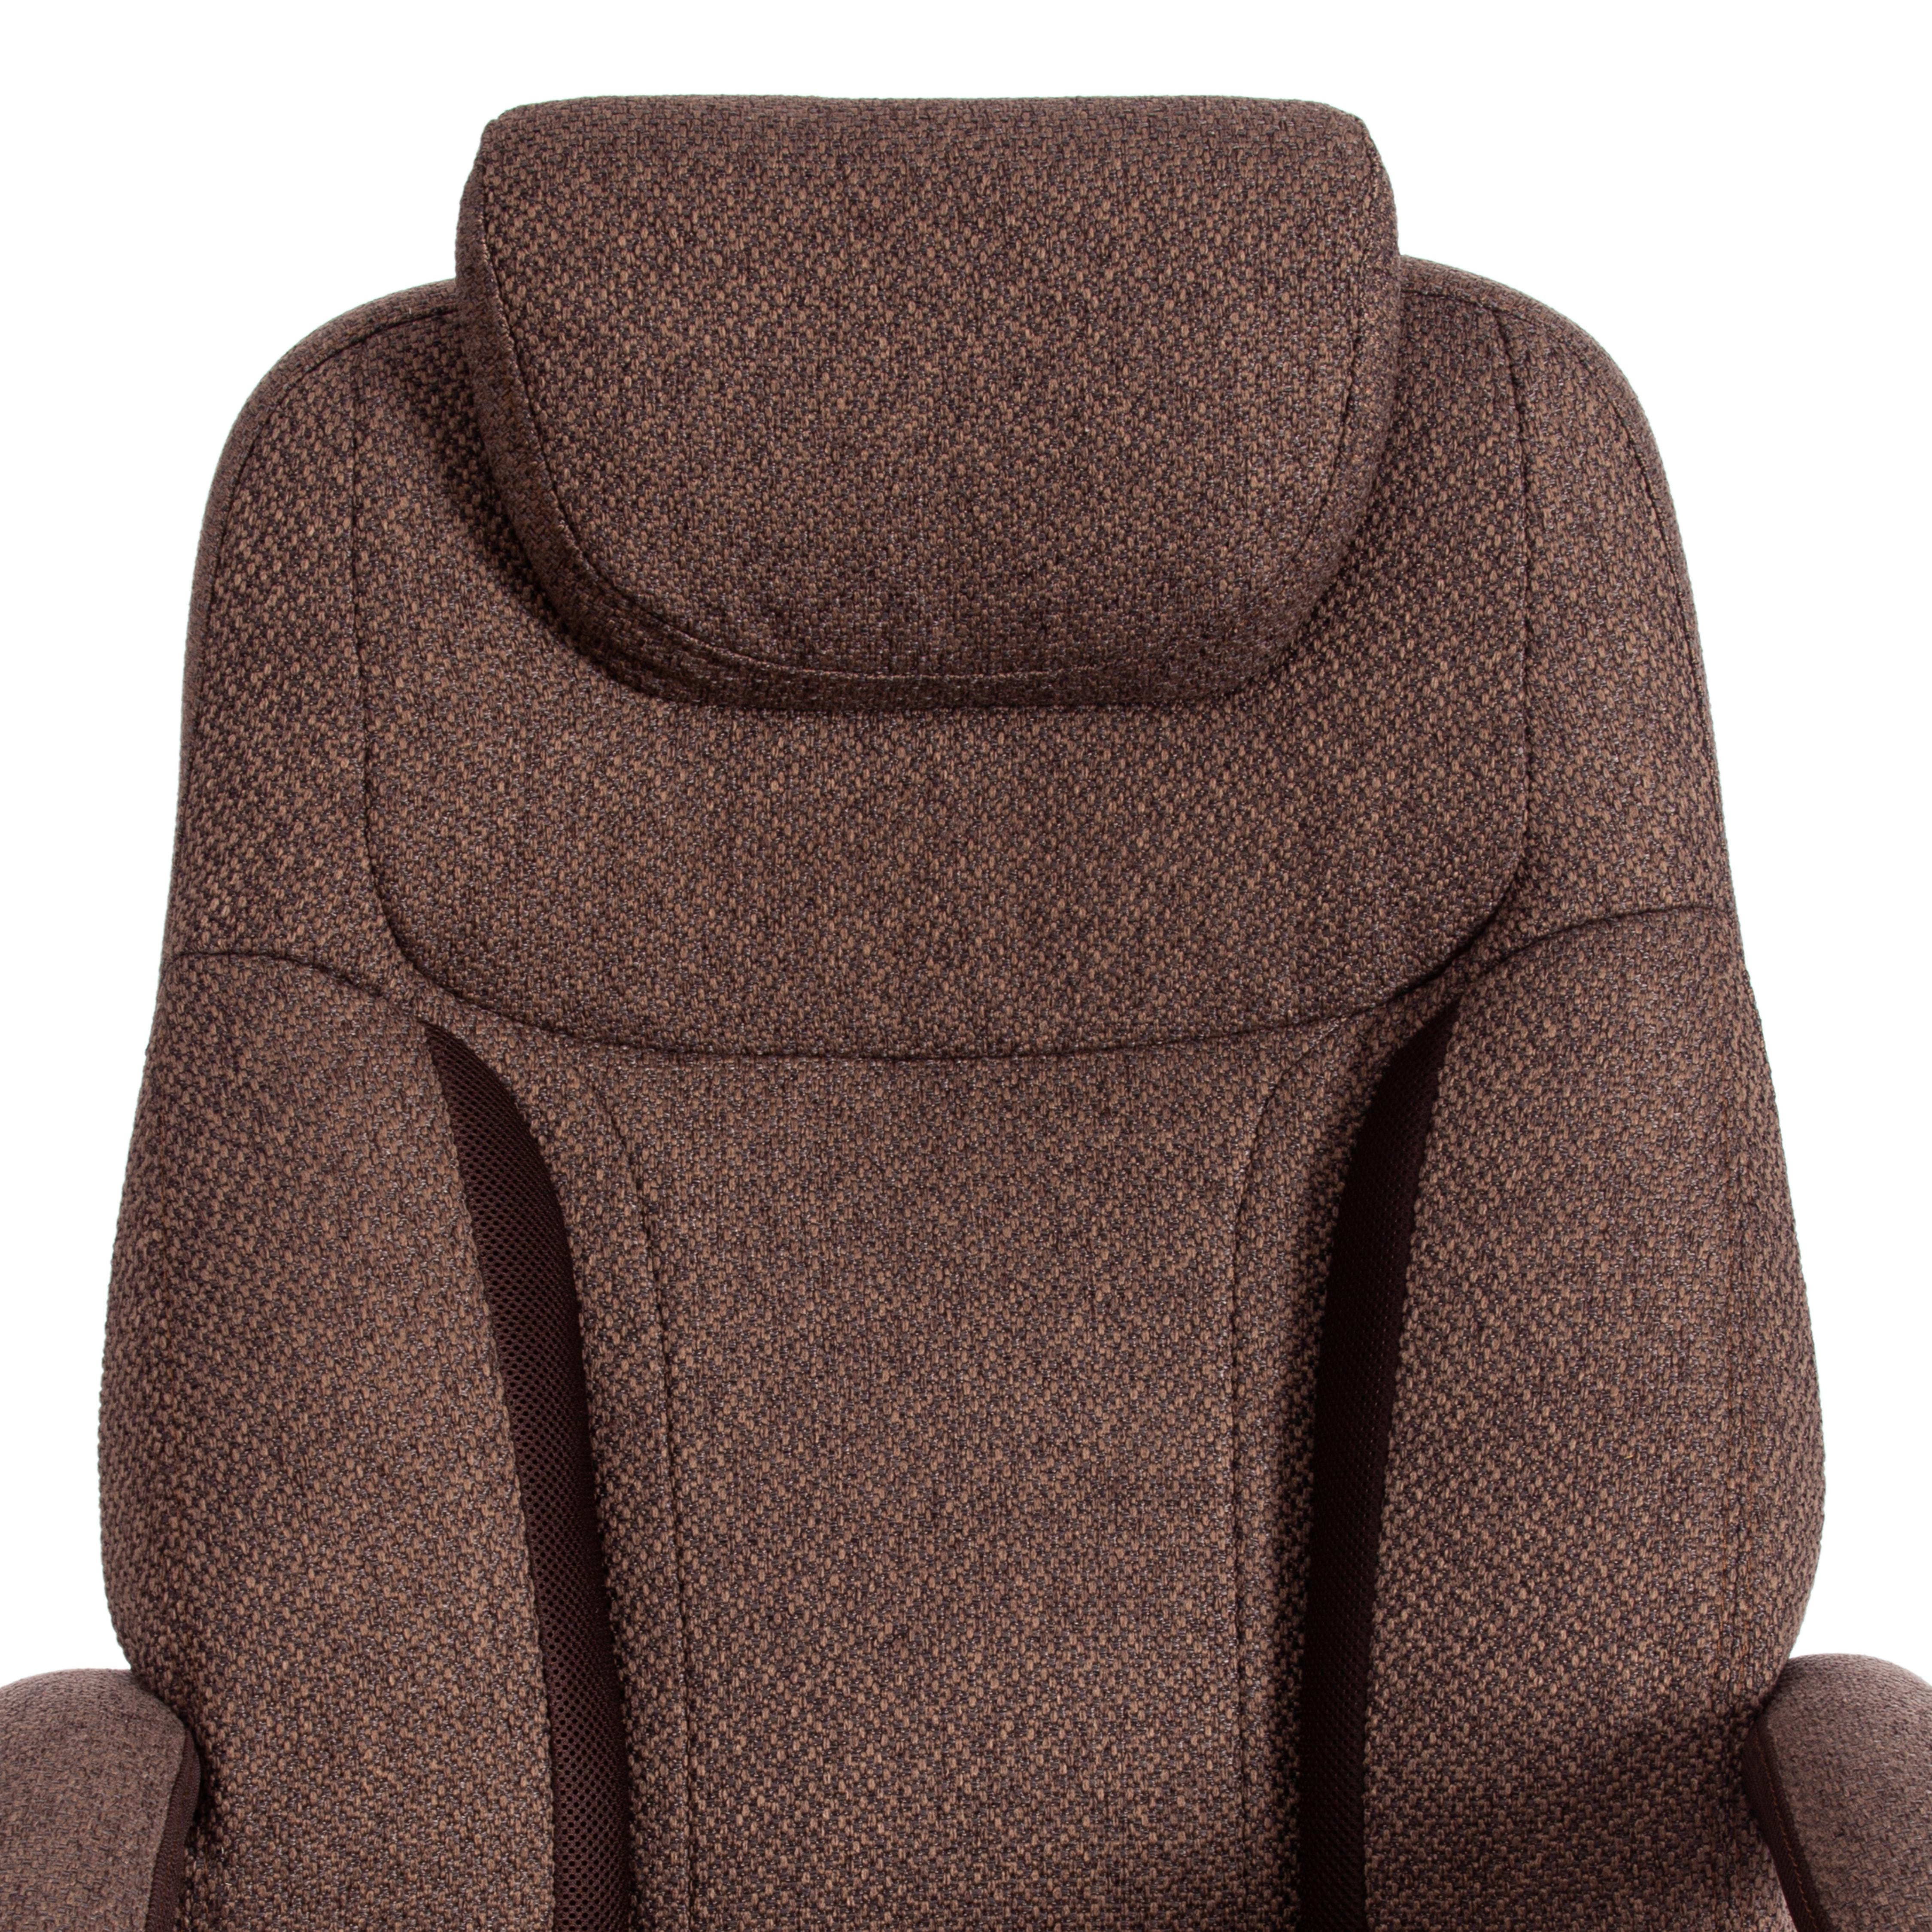 Кресло Trust (max) ткань, коричневый/коричневый , MJ190-7/TW-24